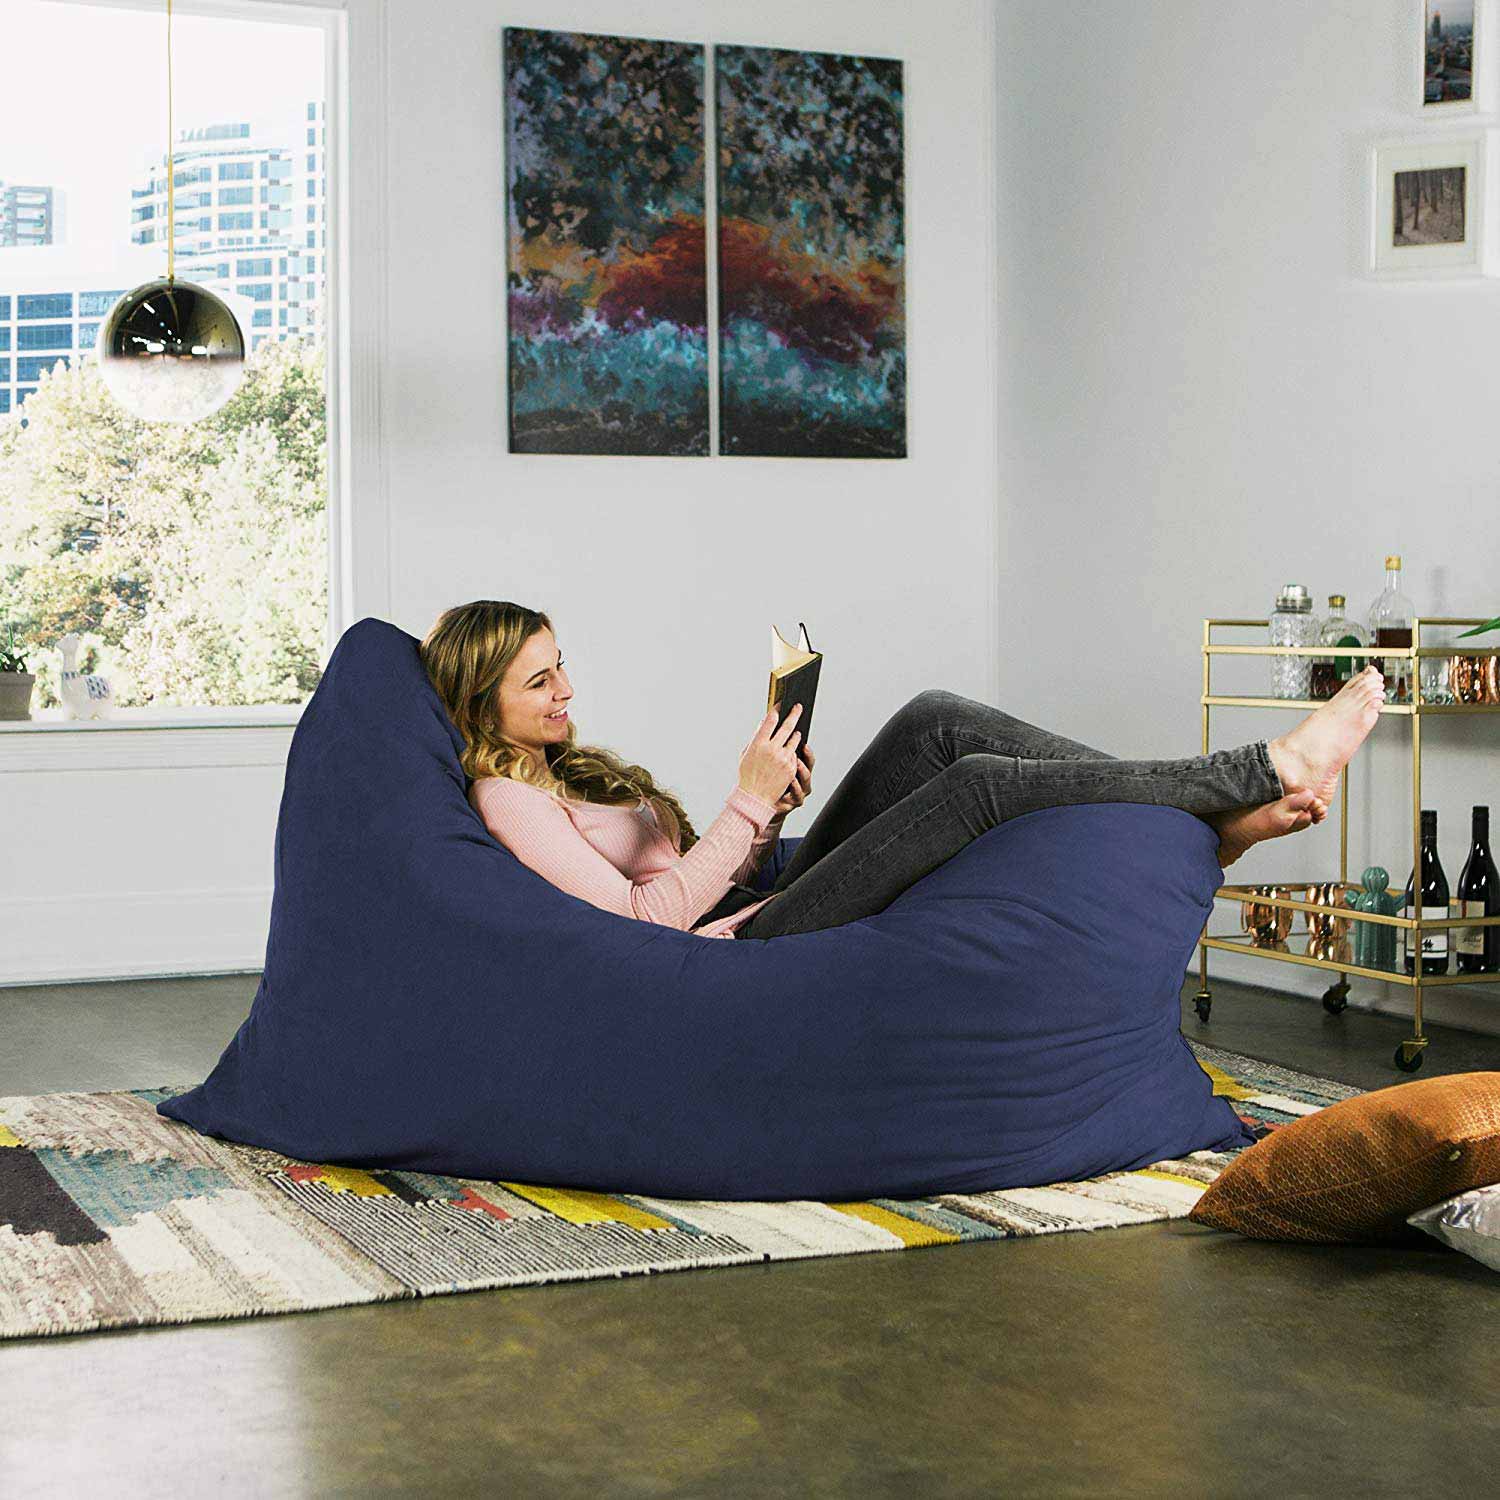 https://bestproducts-4u.com/wp-content/uploads/2018/12/4.-Jaxx-Pillow-Saxx-5.5-Foot-Huge-Bean-Bag-Floor-Pillow-and-Lounger-5.jpg